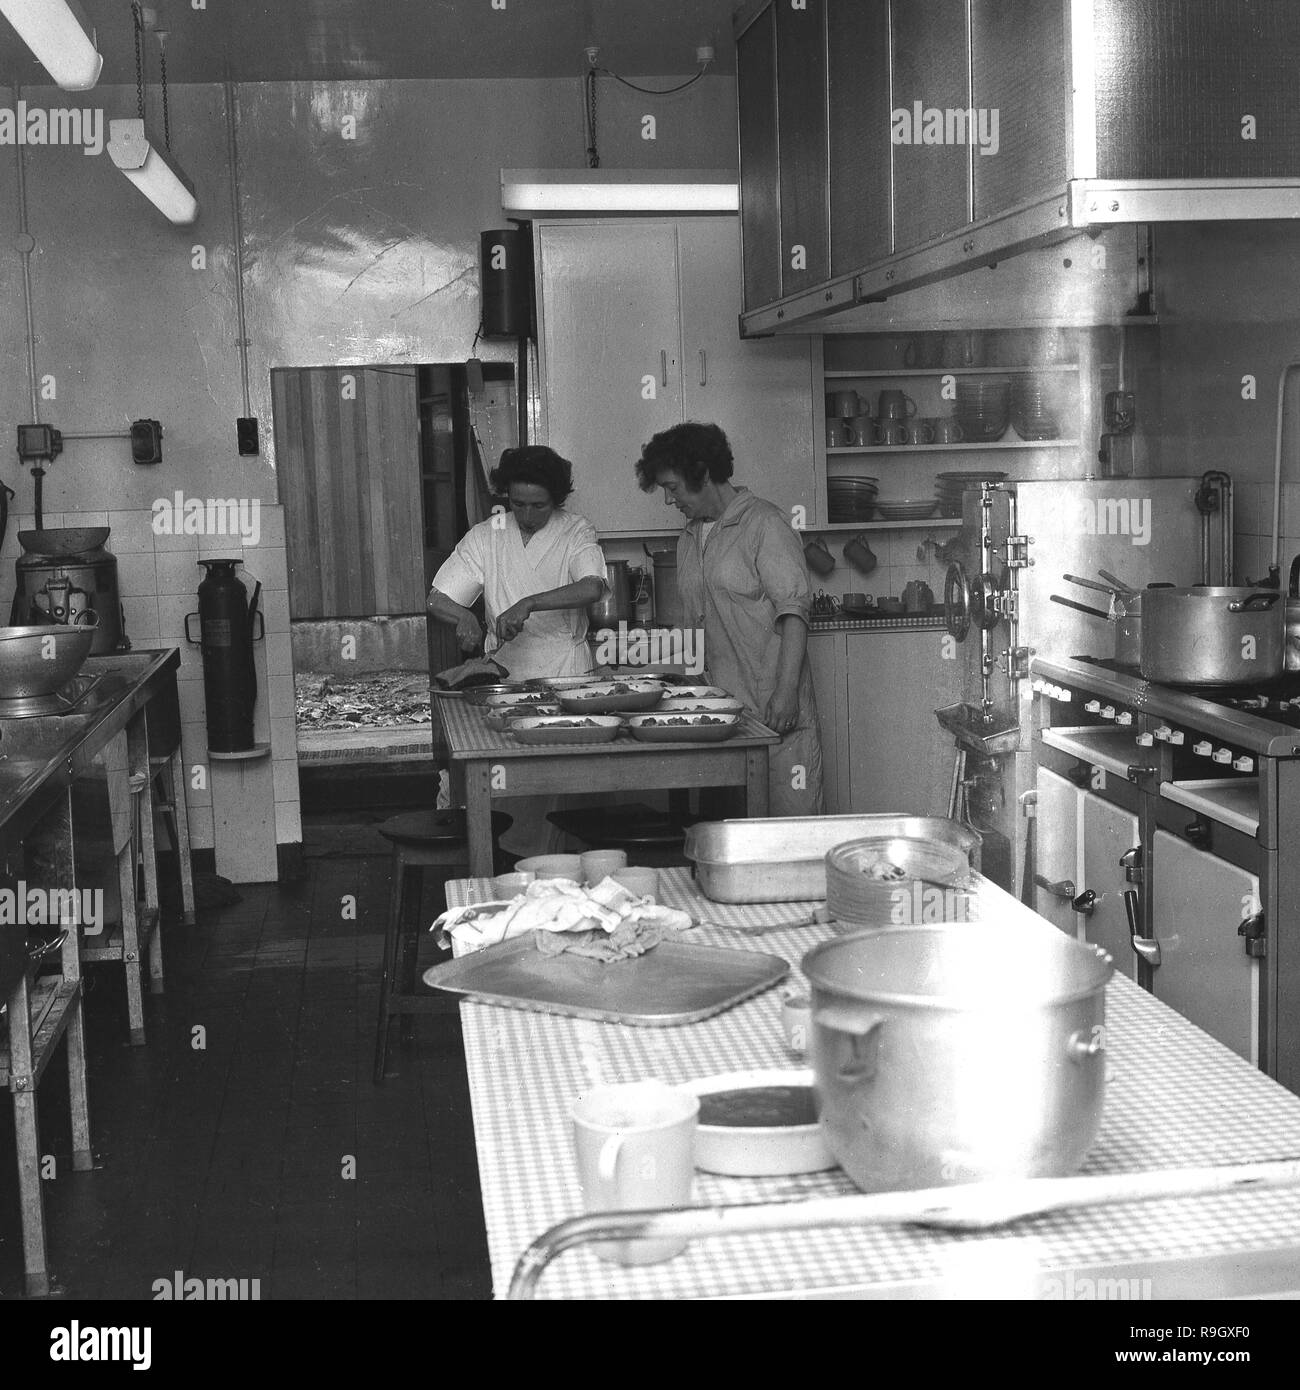 1968, le sud de Londres, des garçons boarding school, en Angleterre, deux femmes cuisiniers travaillent dans l'école cuisine, England, UK. Banque D'Images